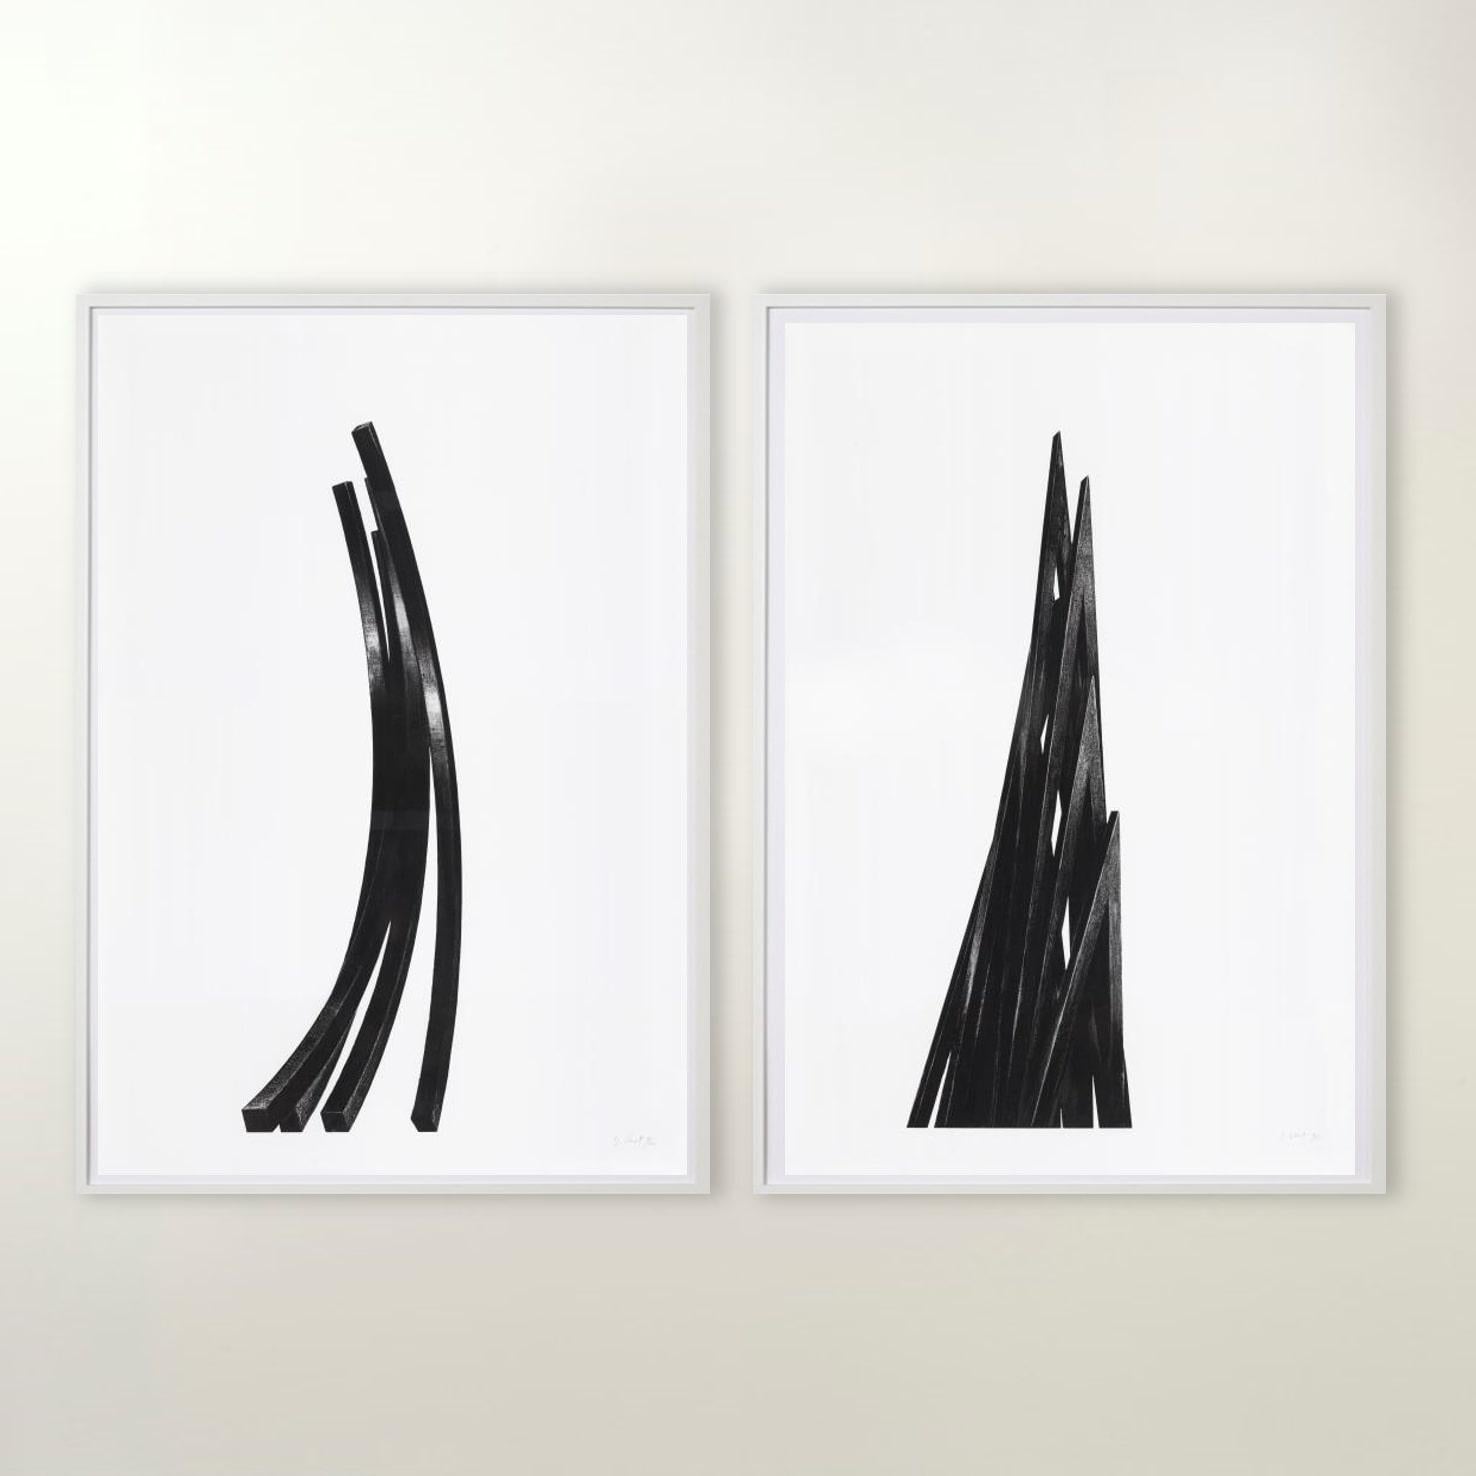 Bernar Venet Figurative Print – Arcs: Uneven Angles - Zeitgenössisch, 21. Jahrhundert, Radierung, Schwarz, Weiß, Auflage